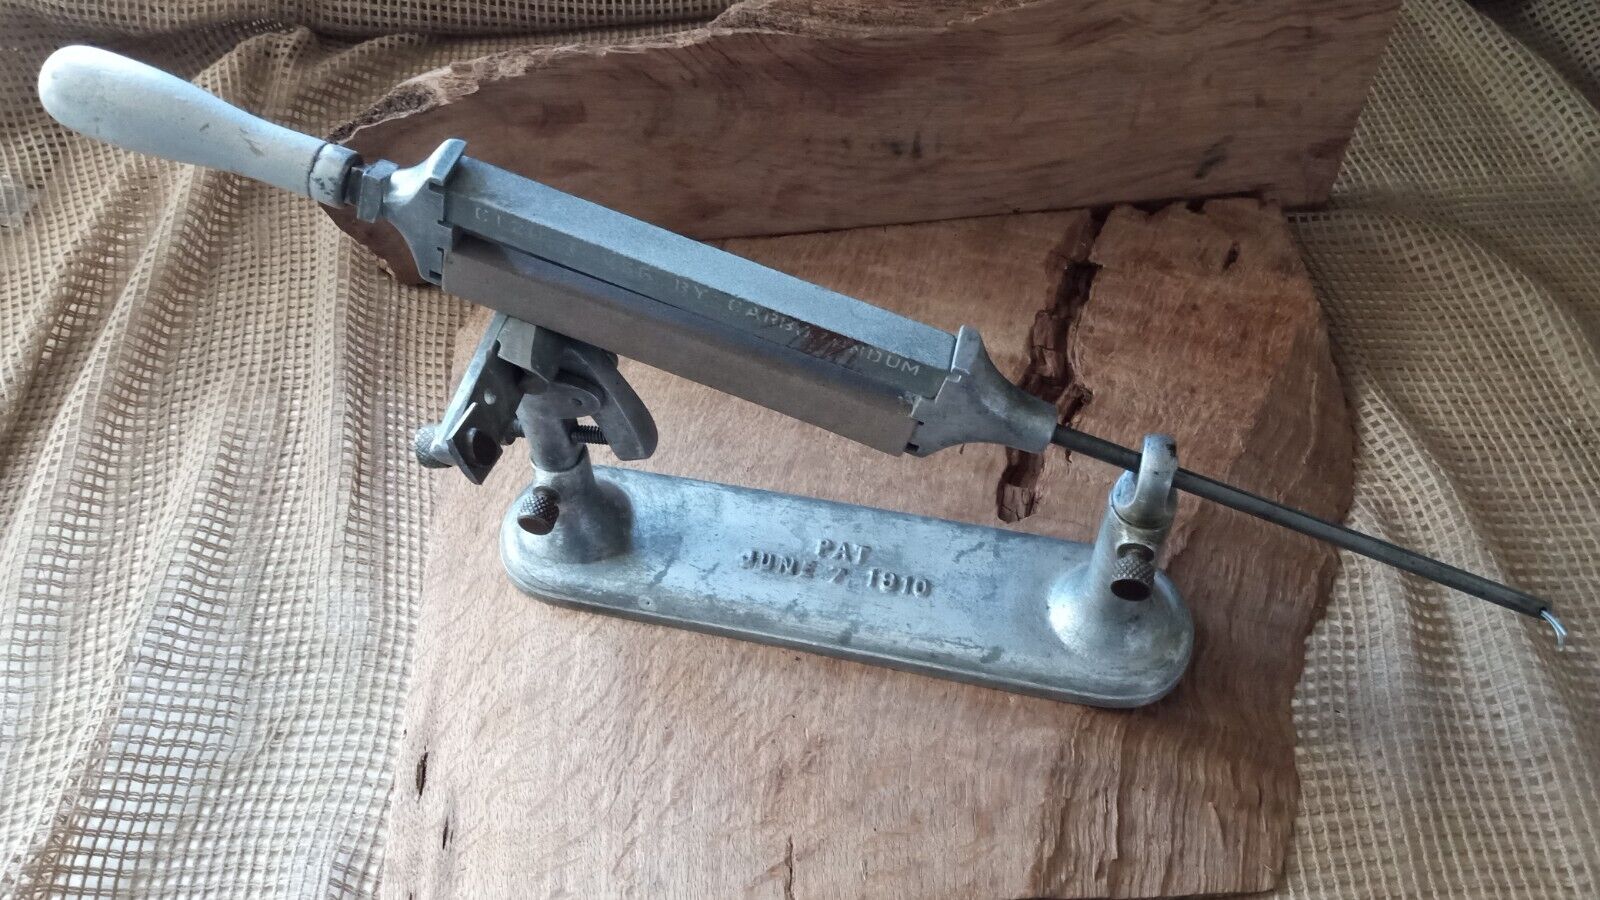 Antique Barber Sheer Sharpener System, Used Patent 1910